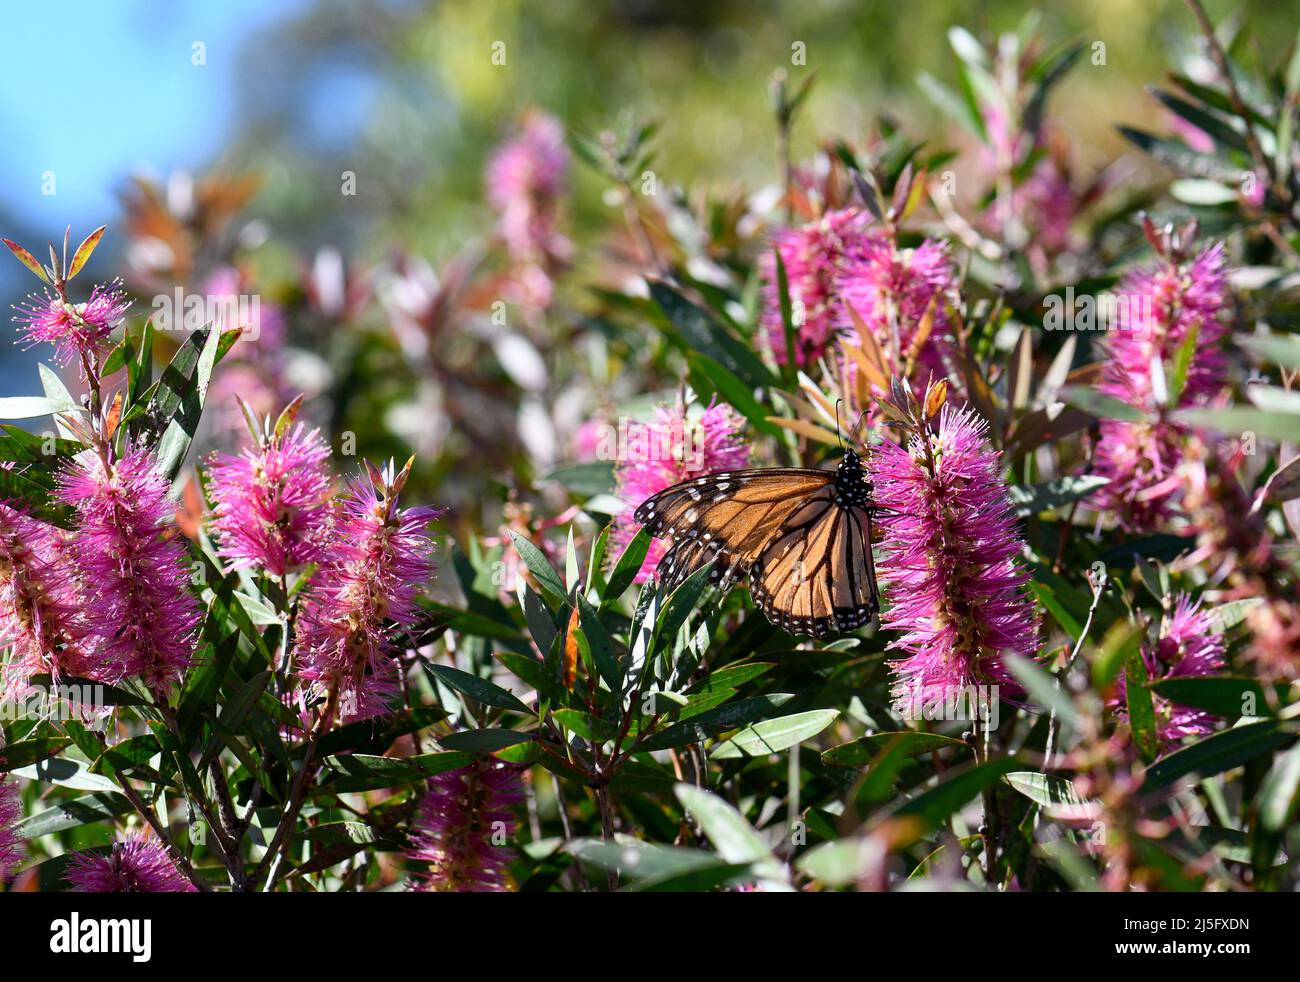 Jardin australien coloré avec un papillon Monarch se nourrissant sur le nectar d'une fleur de Bottlebrush, Callistemon violaceus Banque D'Images